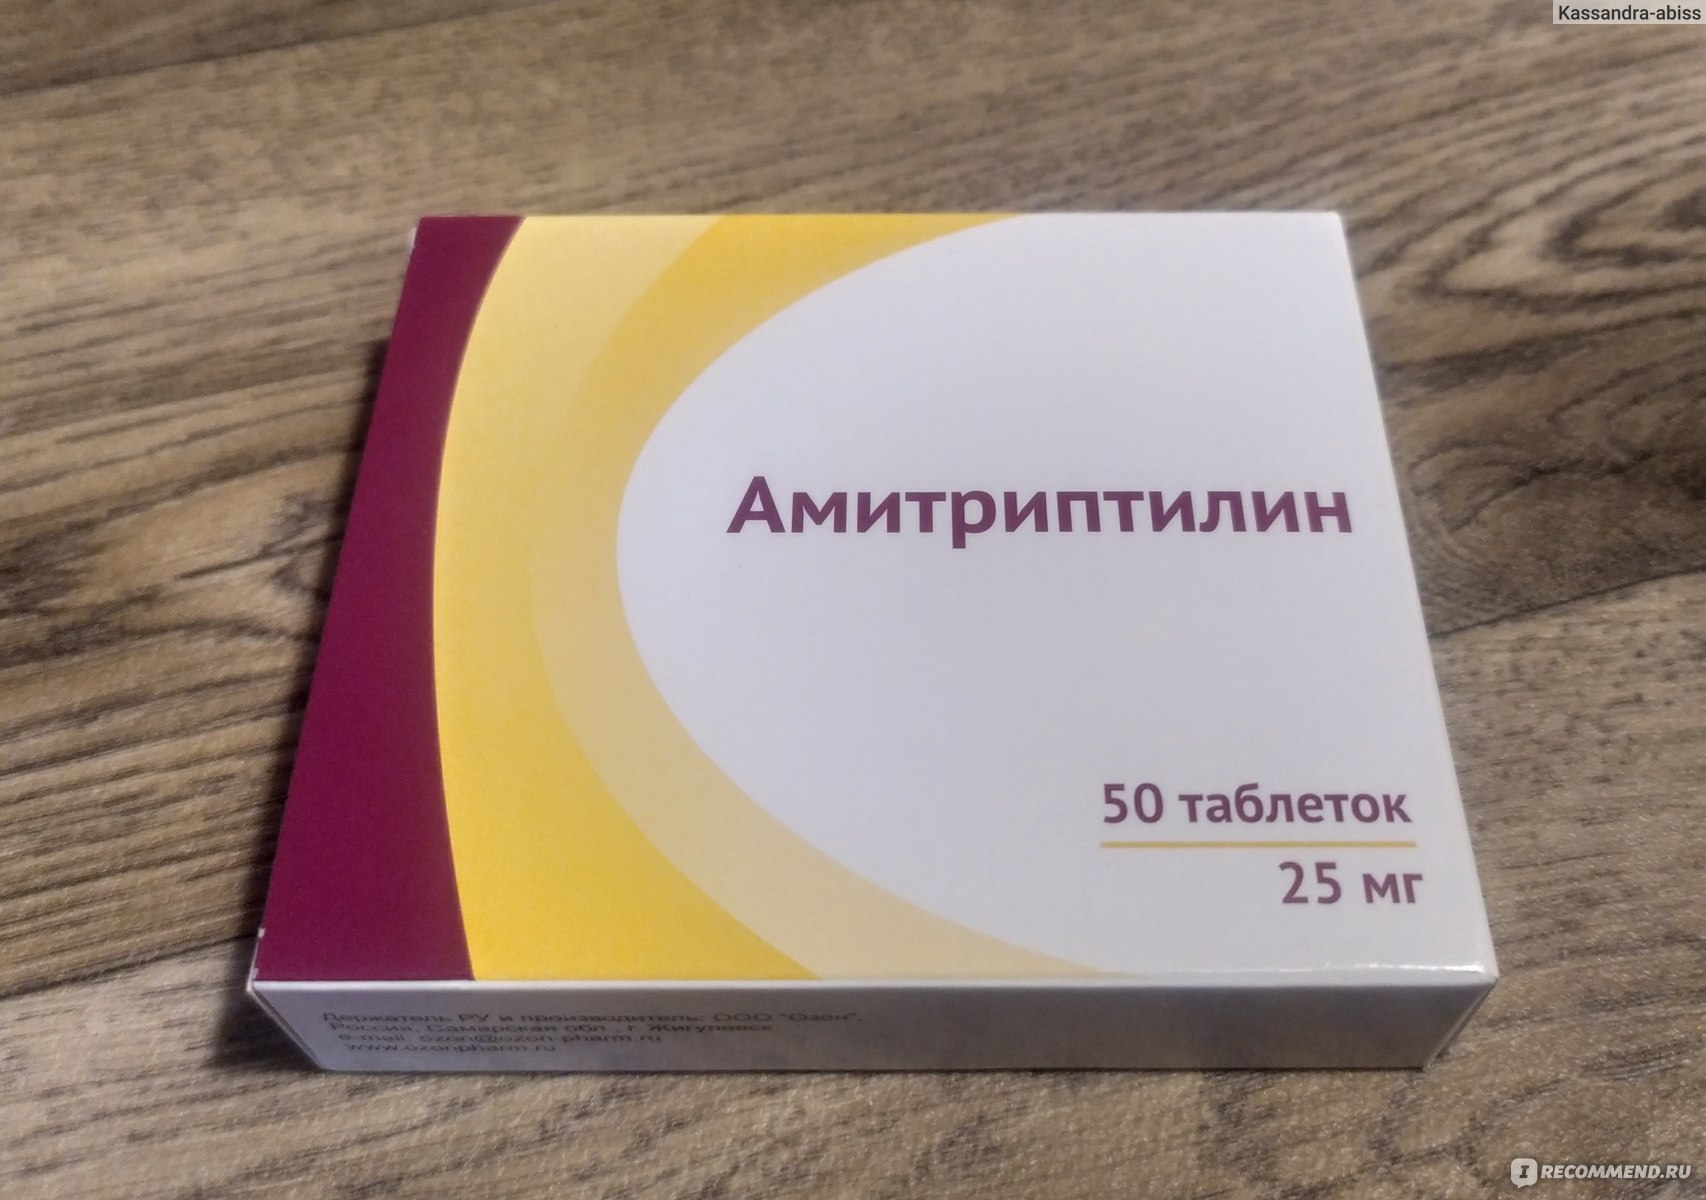 Para qué sirve la amitriptilina